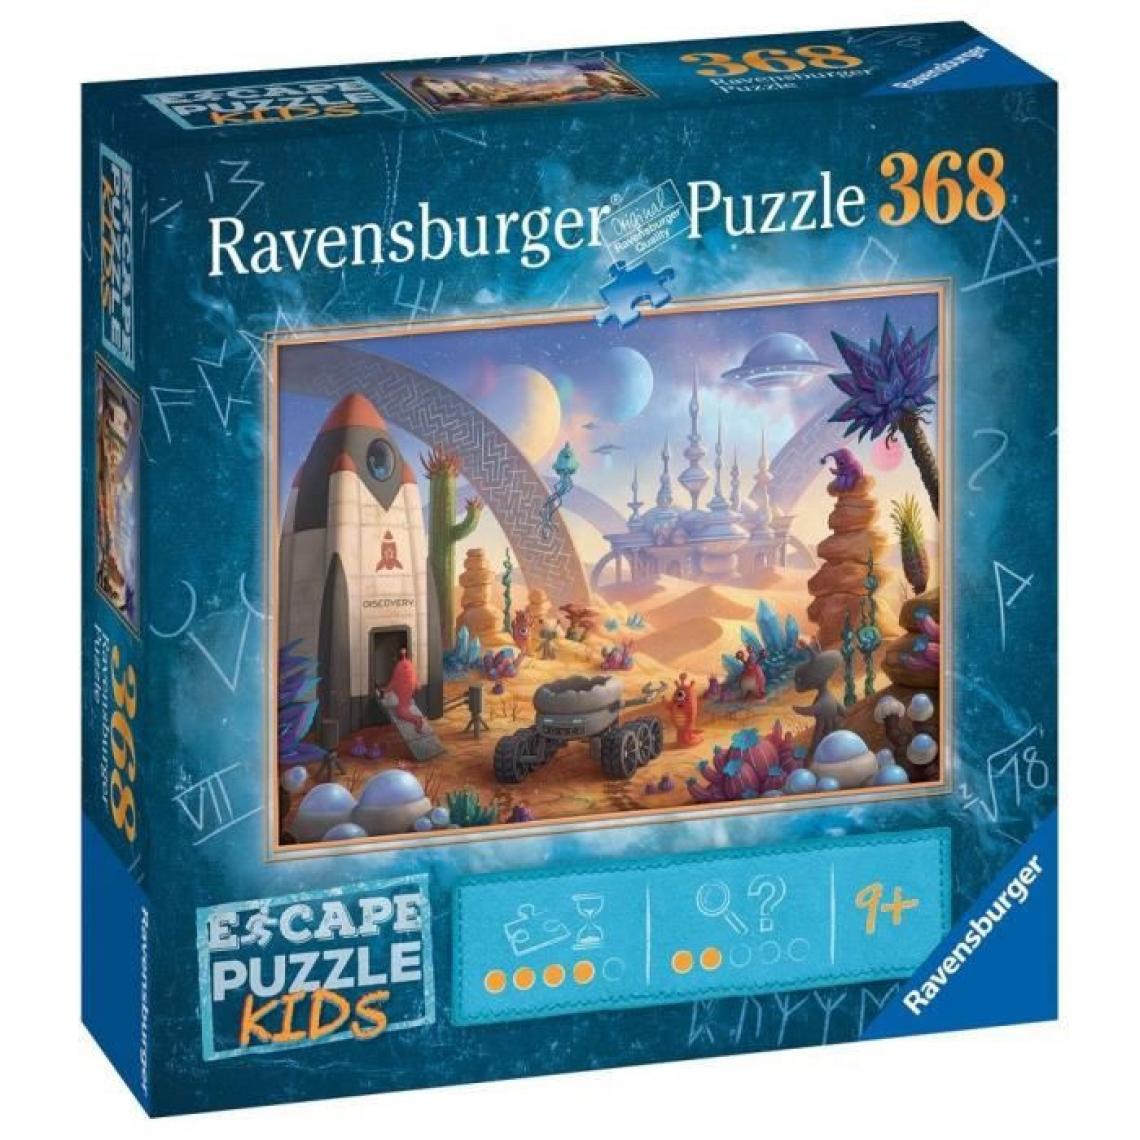 Ravensburger - Ravensburger - Escape puzzle 368 pieces Kids - La mission spatiale - Animaux